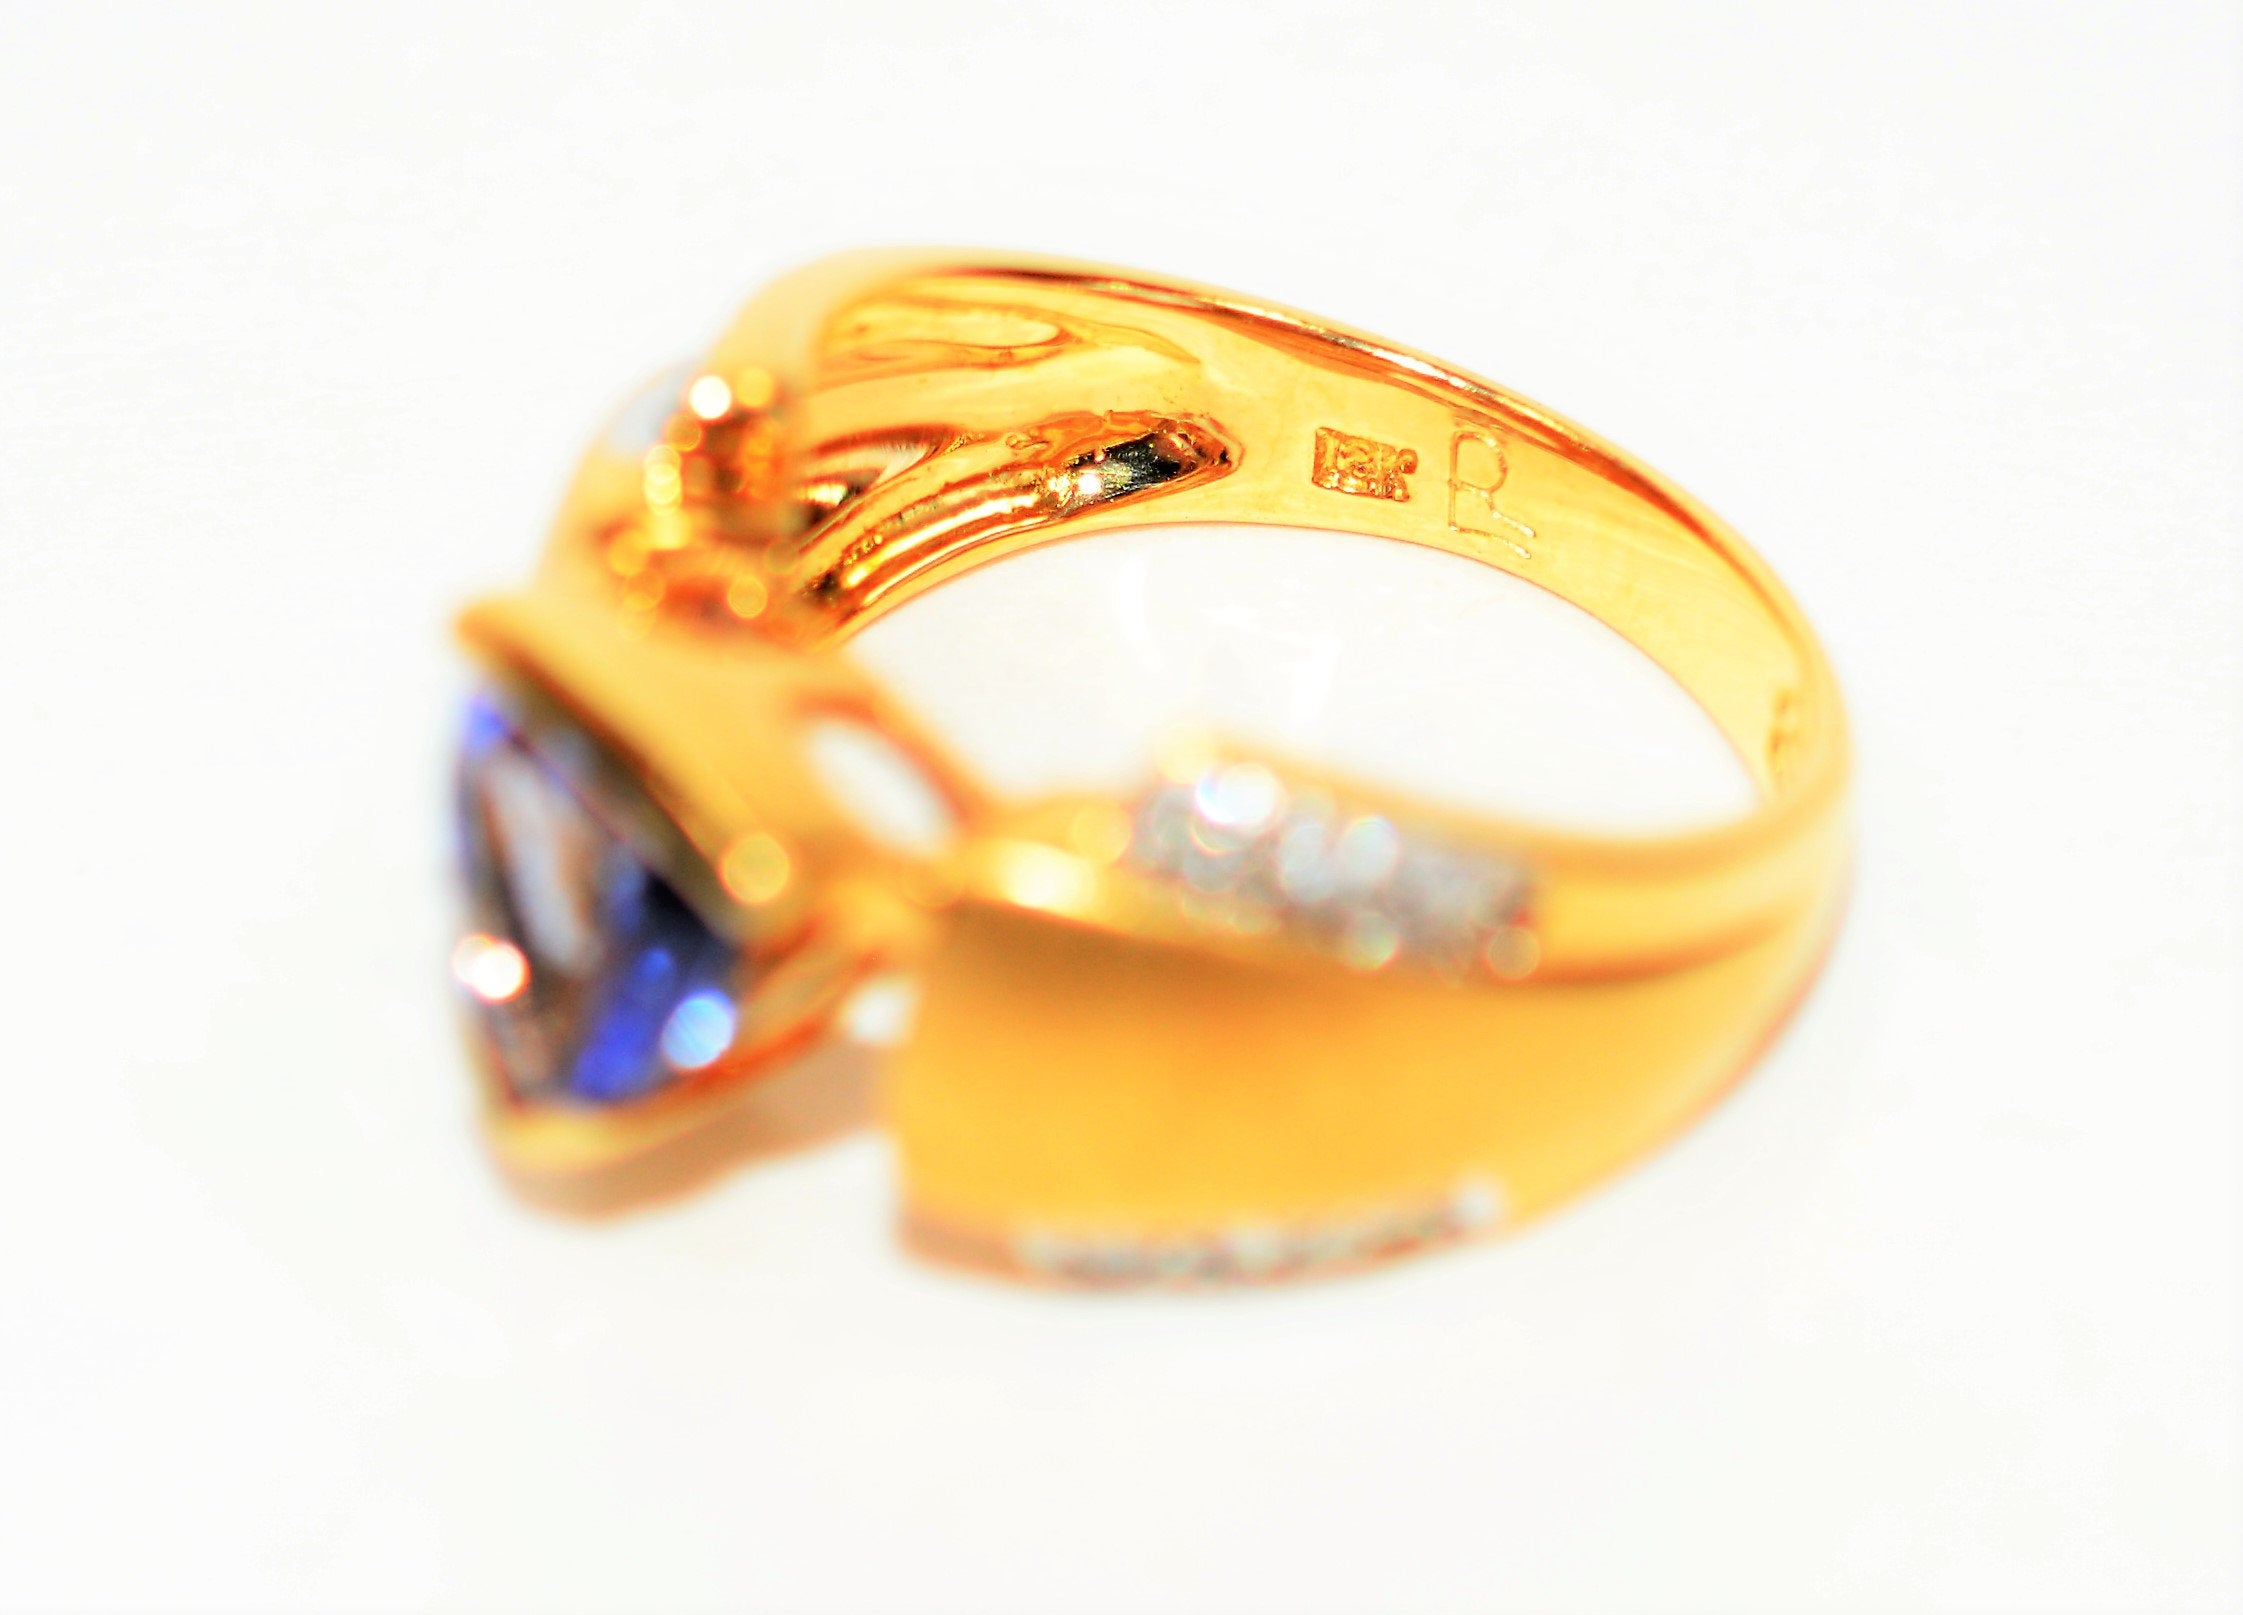 Natural Tanzanite & Diamond Ring 18K Solid Gold 1.23tcw Statement Ring Gemstone Ring December Birthstone Ring Cocktail Ring Tanzanite Ring